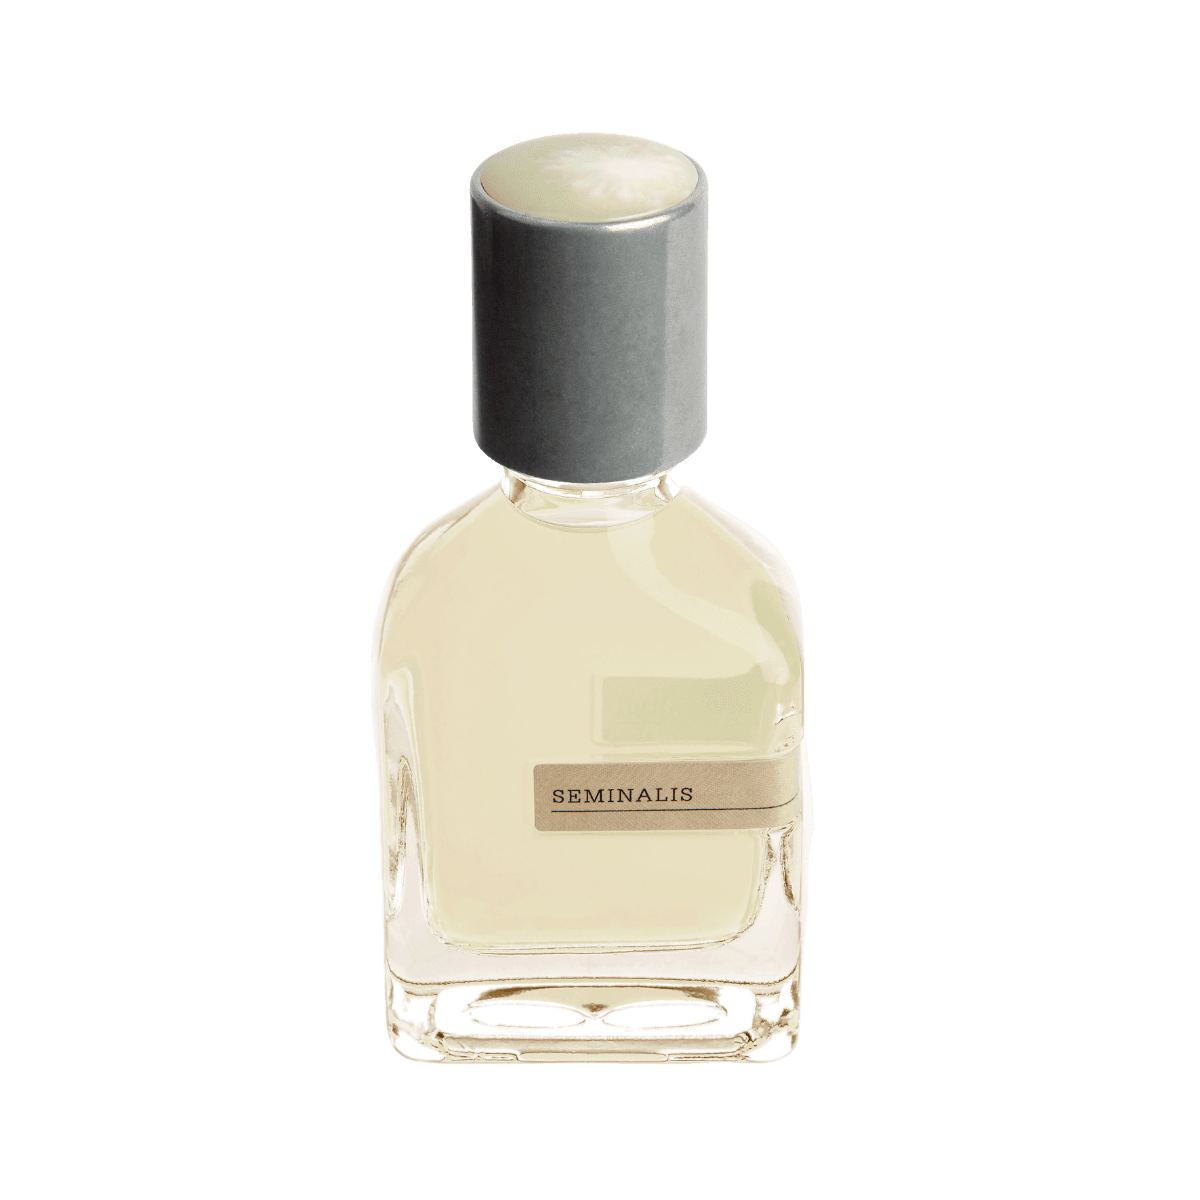 Afbeelding van Seminalis extrait de parfum 50 ml van het parfummerk Orto Parisi